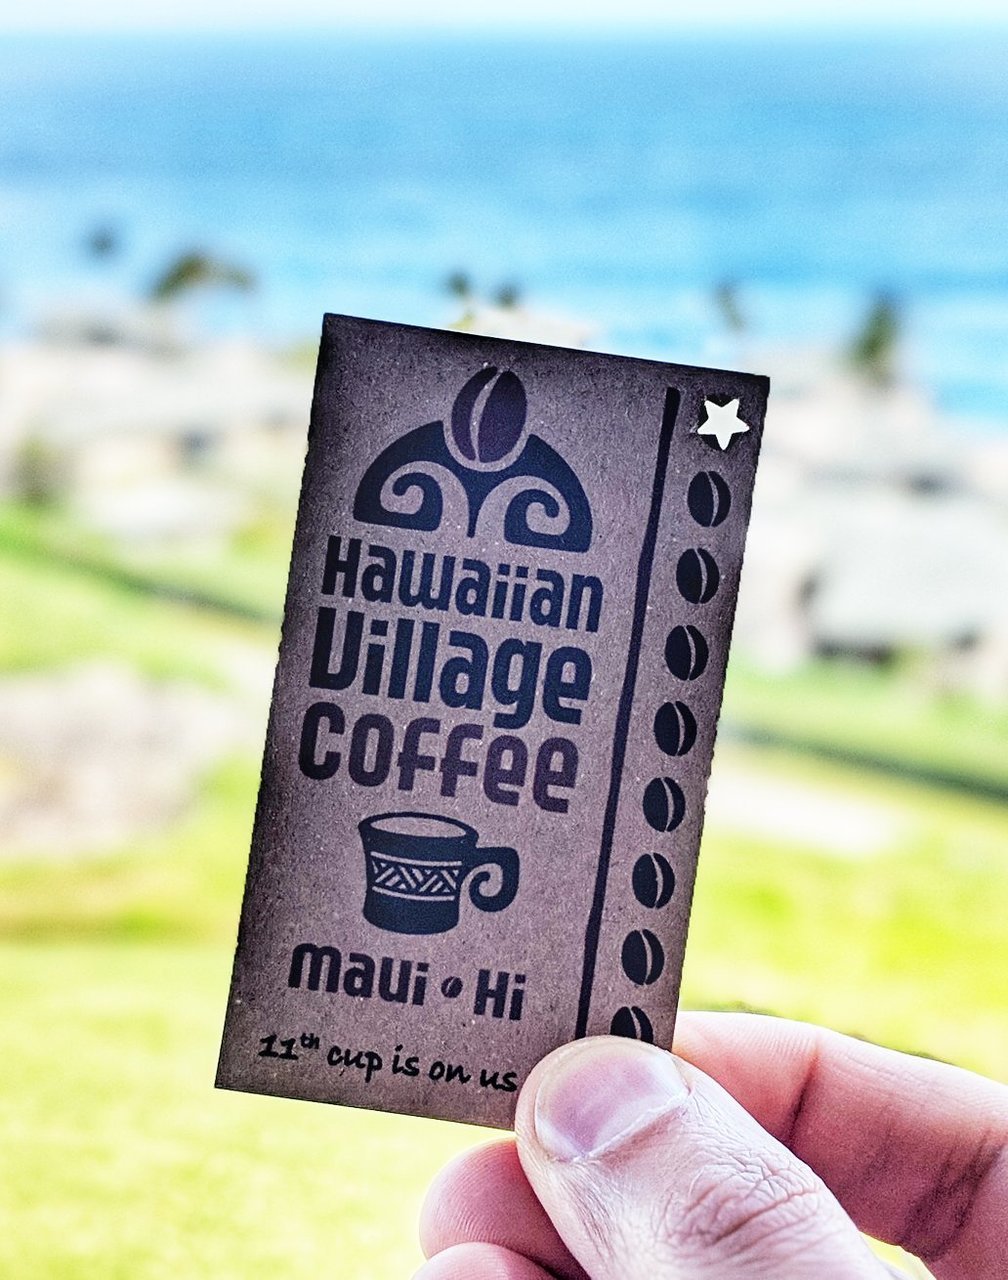 Hawaiian Village Coffee